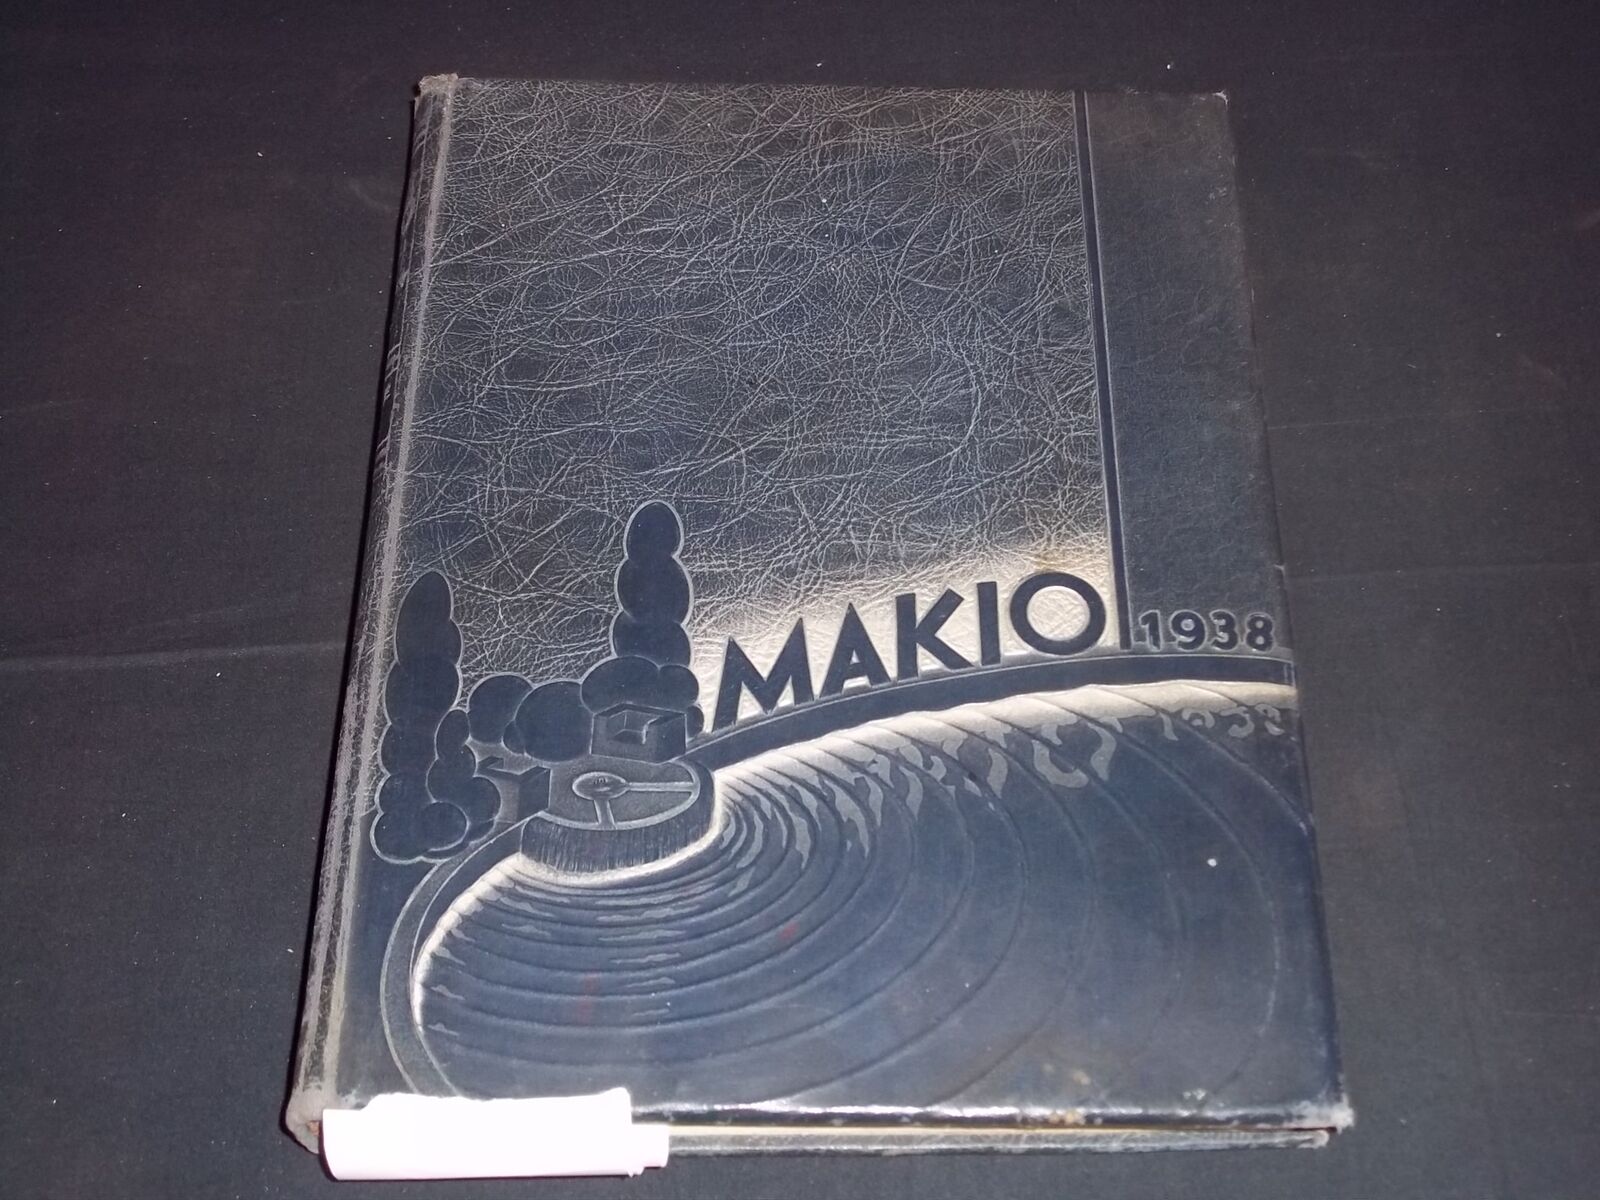 1938 MAKIO THE OHIO STATE UNIVERSITY YEARBOOK - BUCKEYES FOOTBALL - YB 1742